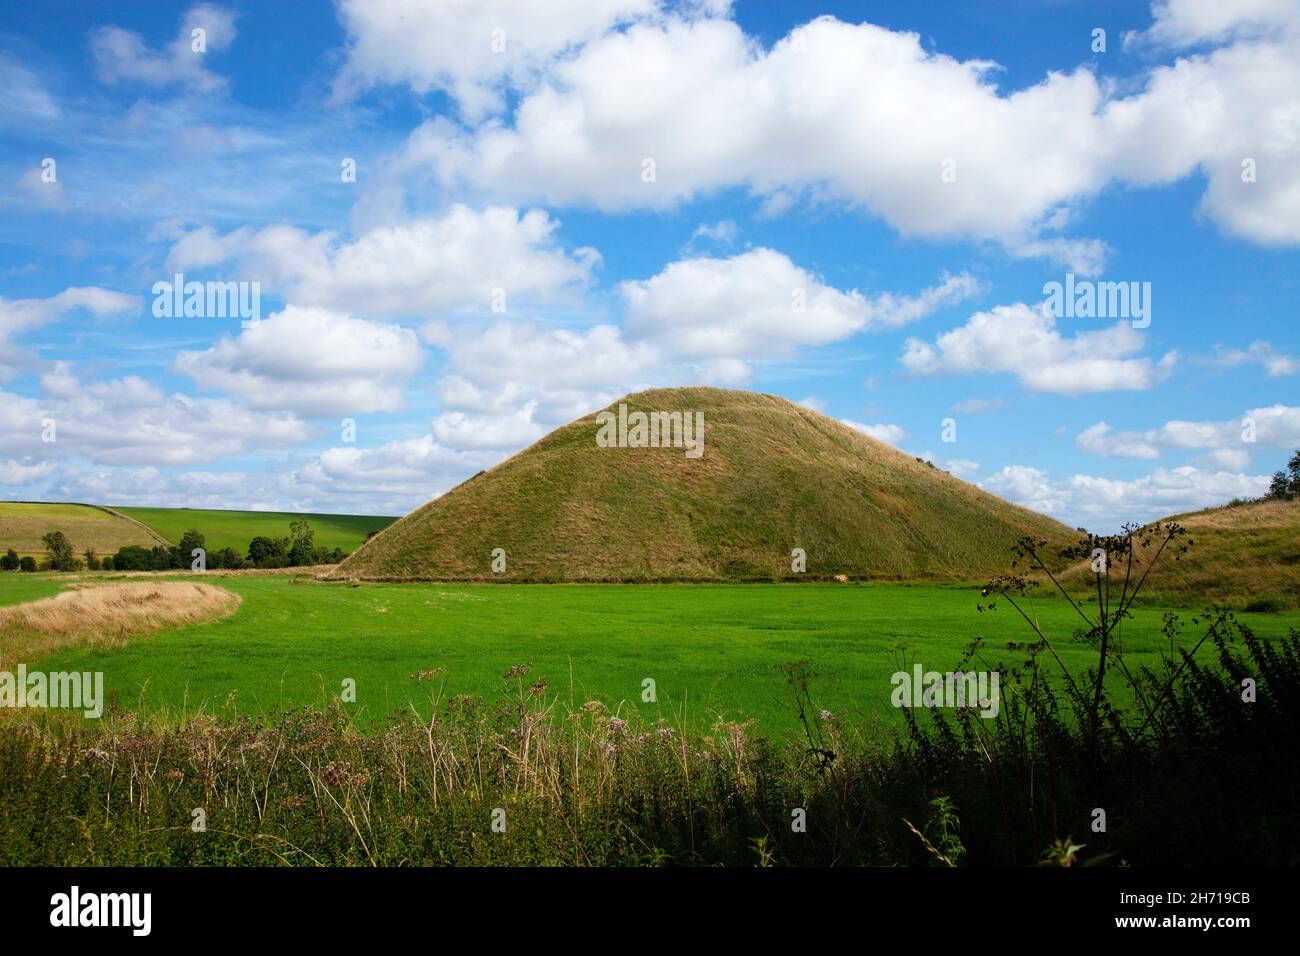 Silbury Hill près d'Avebury Préhistorique Nolithic artificielle de craie monolithe en été bleu ciel blanc nuages vert herbe en premier plan Banque D'Images